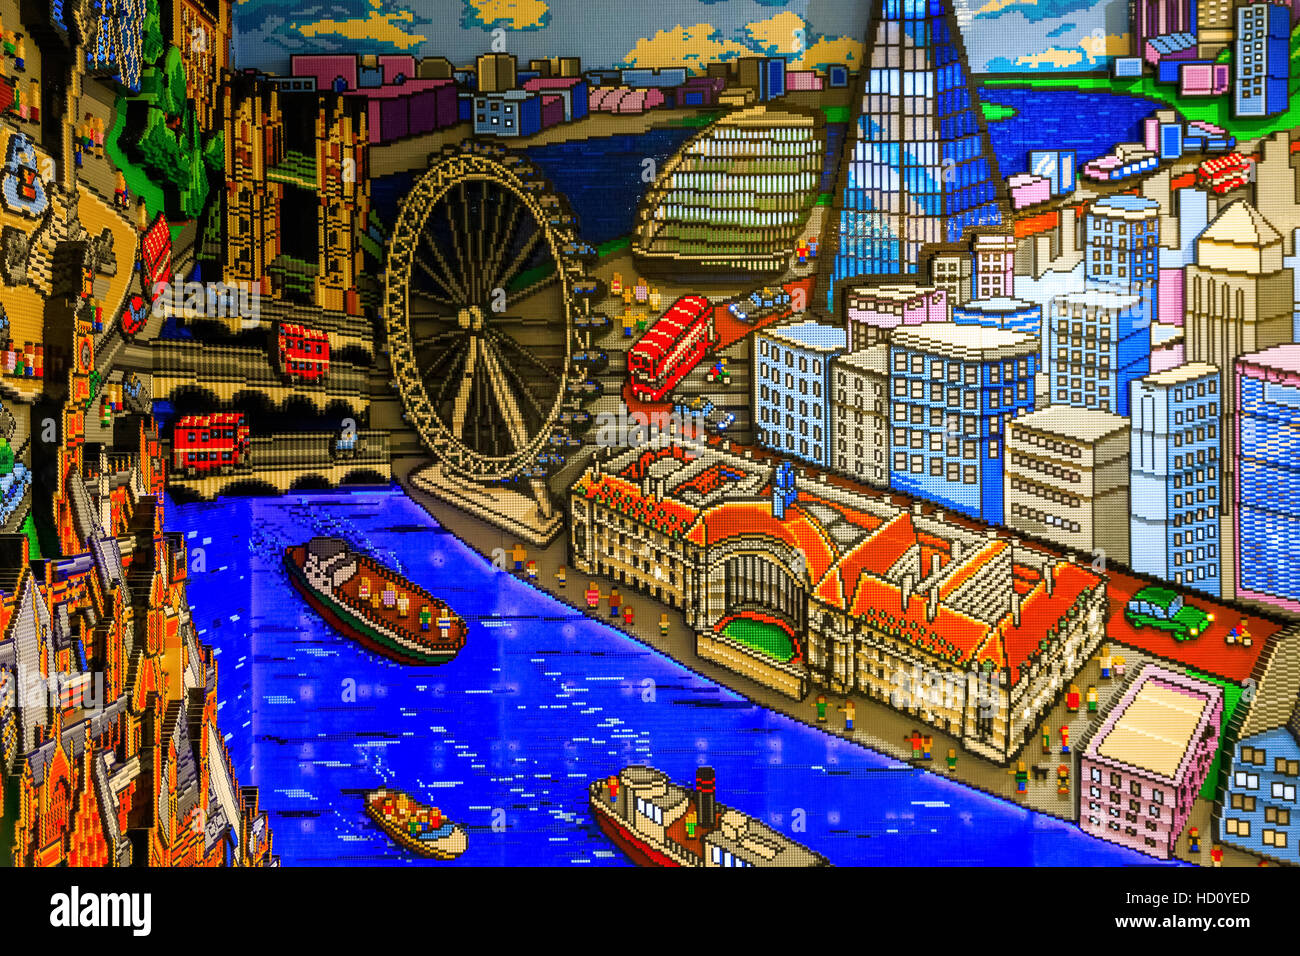 Londres, Royaume-Uni - 22 novembre 2016 - Repères construit à partir de briques LEGO, affiché dans le plus grand magasin LEGO Banque D'Images